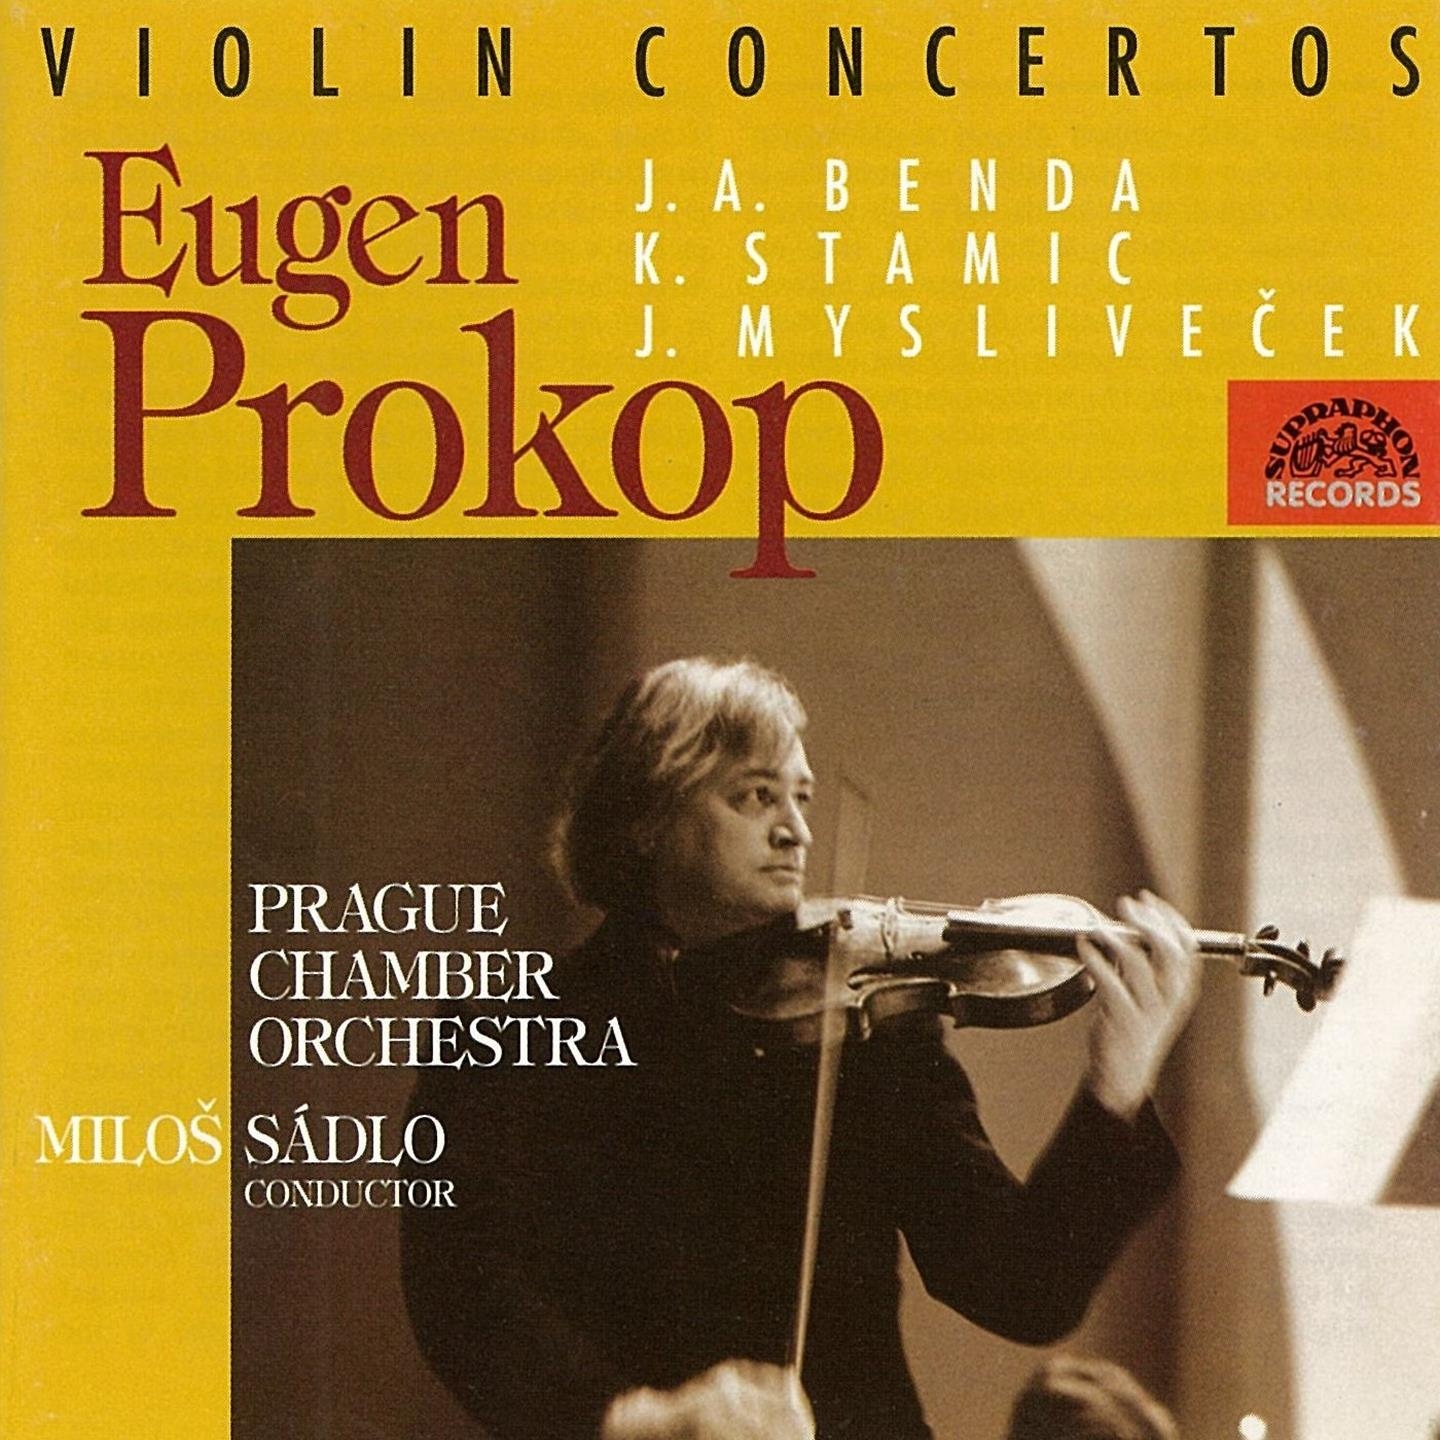 Concerto for Violin and Orchestra No. 4 in D-Sharp Major, .: II. Adagio